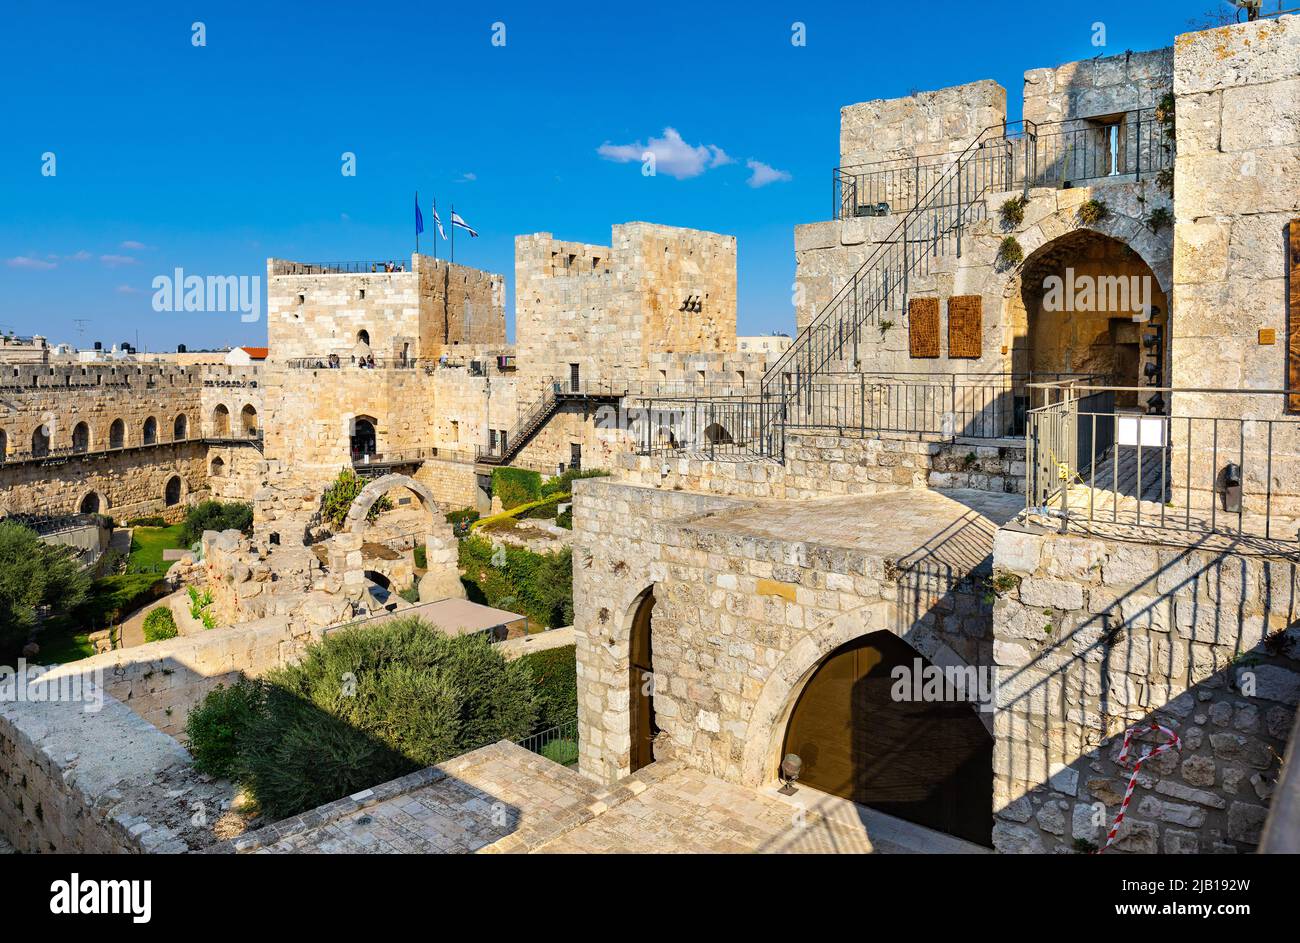 Jerusalén, Israel - 12 de octubre de 2017: Patio interior, paredes y sitio de excavación arqueológica de la fortaleza de la ciudadela de la Torre de David en la Ciudad Vieja Foto de stock